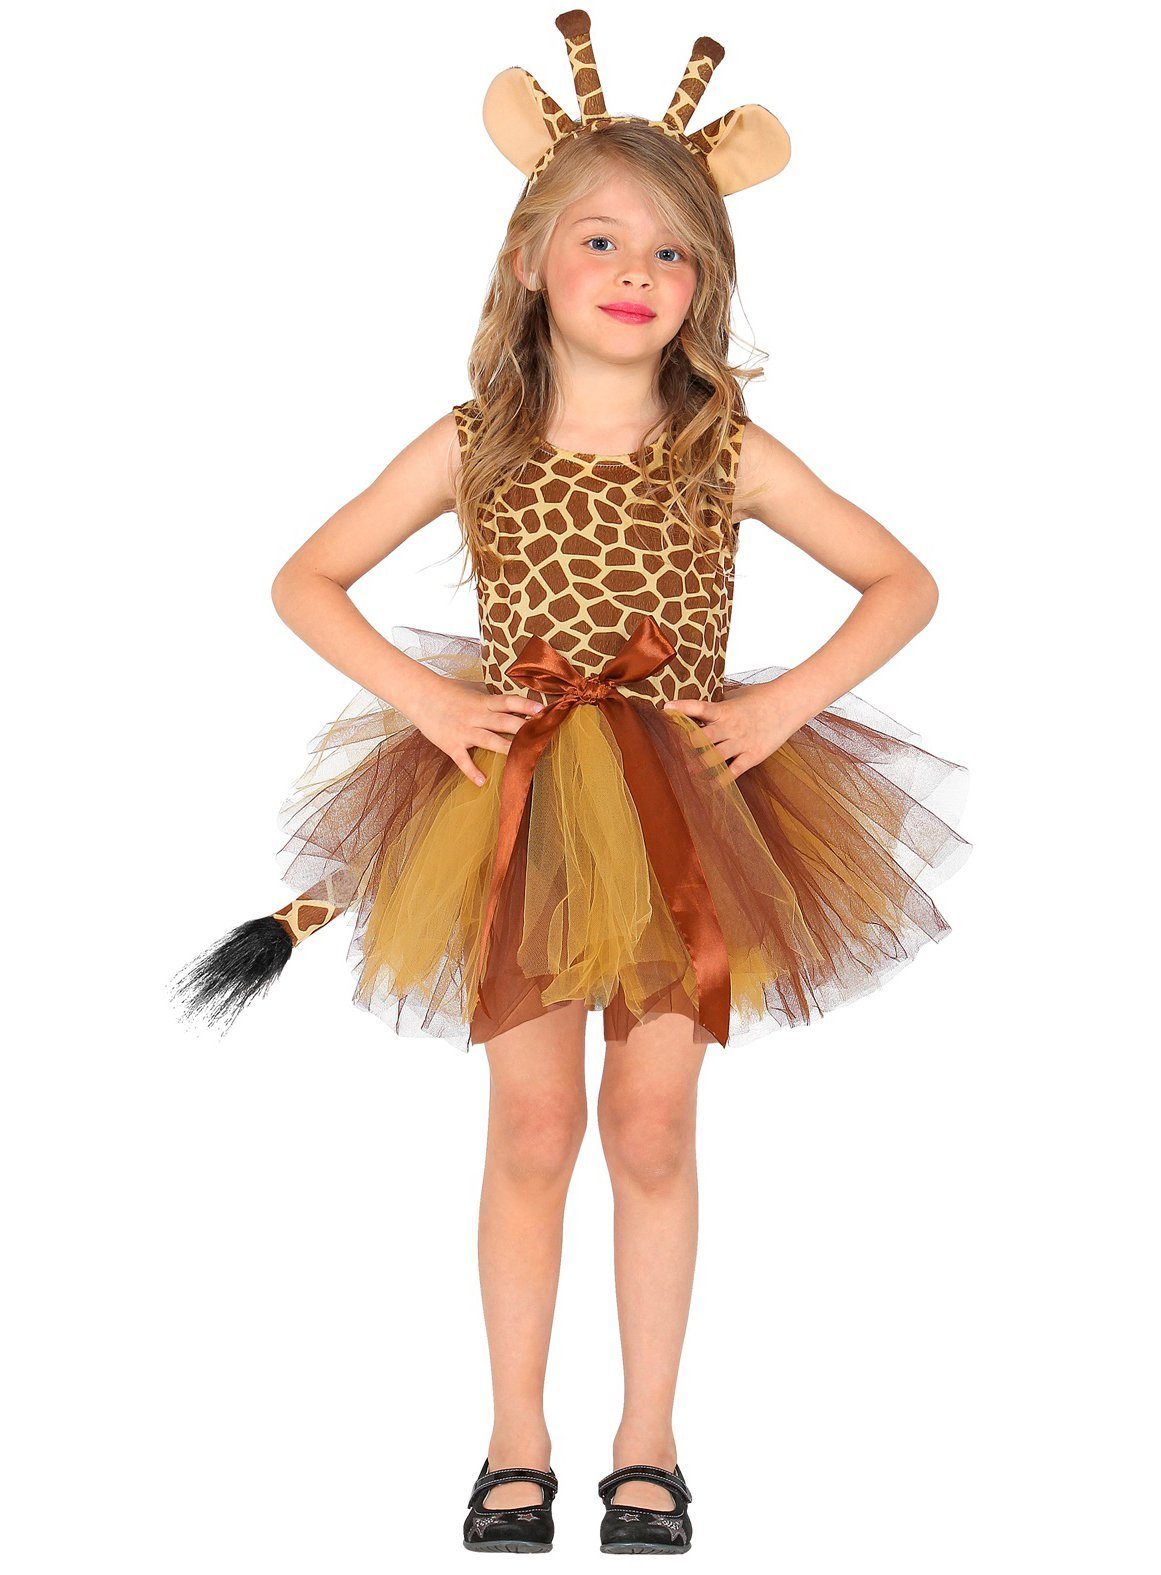 Widdmann Kostüm »Kleine Giraffe«, Süßes Tutukleid mit Giraffenmuster und  passendem Haarreif online kaufen | OTTO